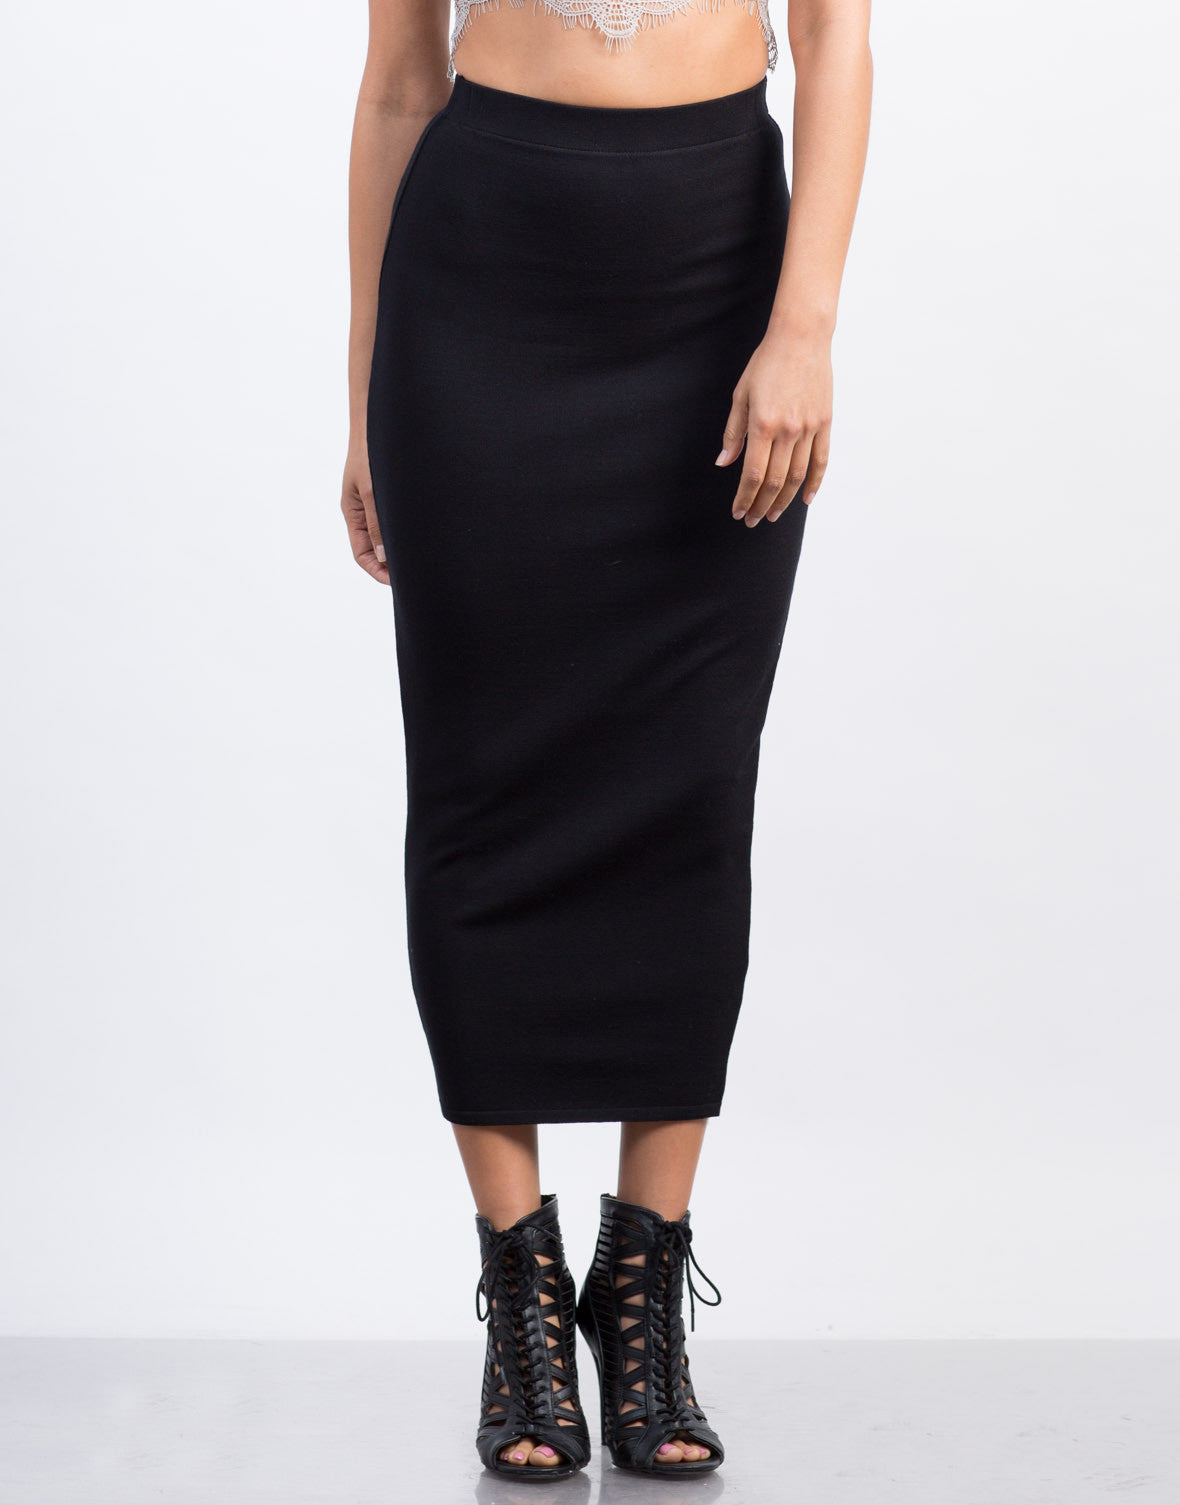 Solid Long Pencil Skirt Maxi Skirt Black Skirt 2020ave